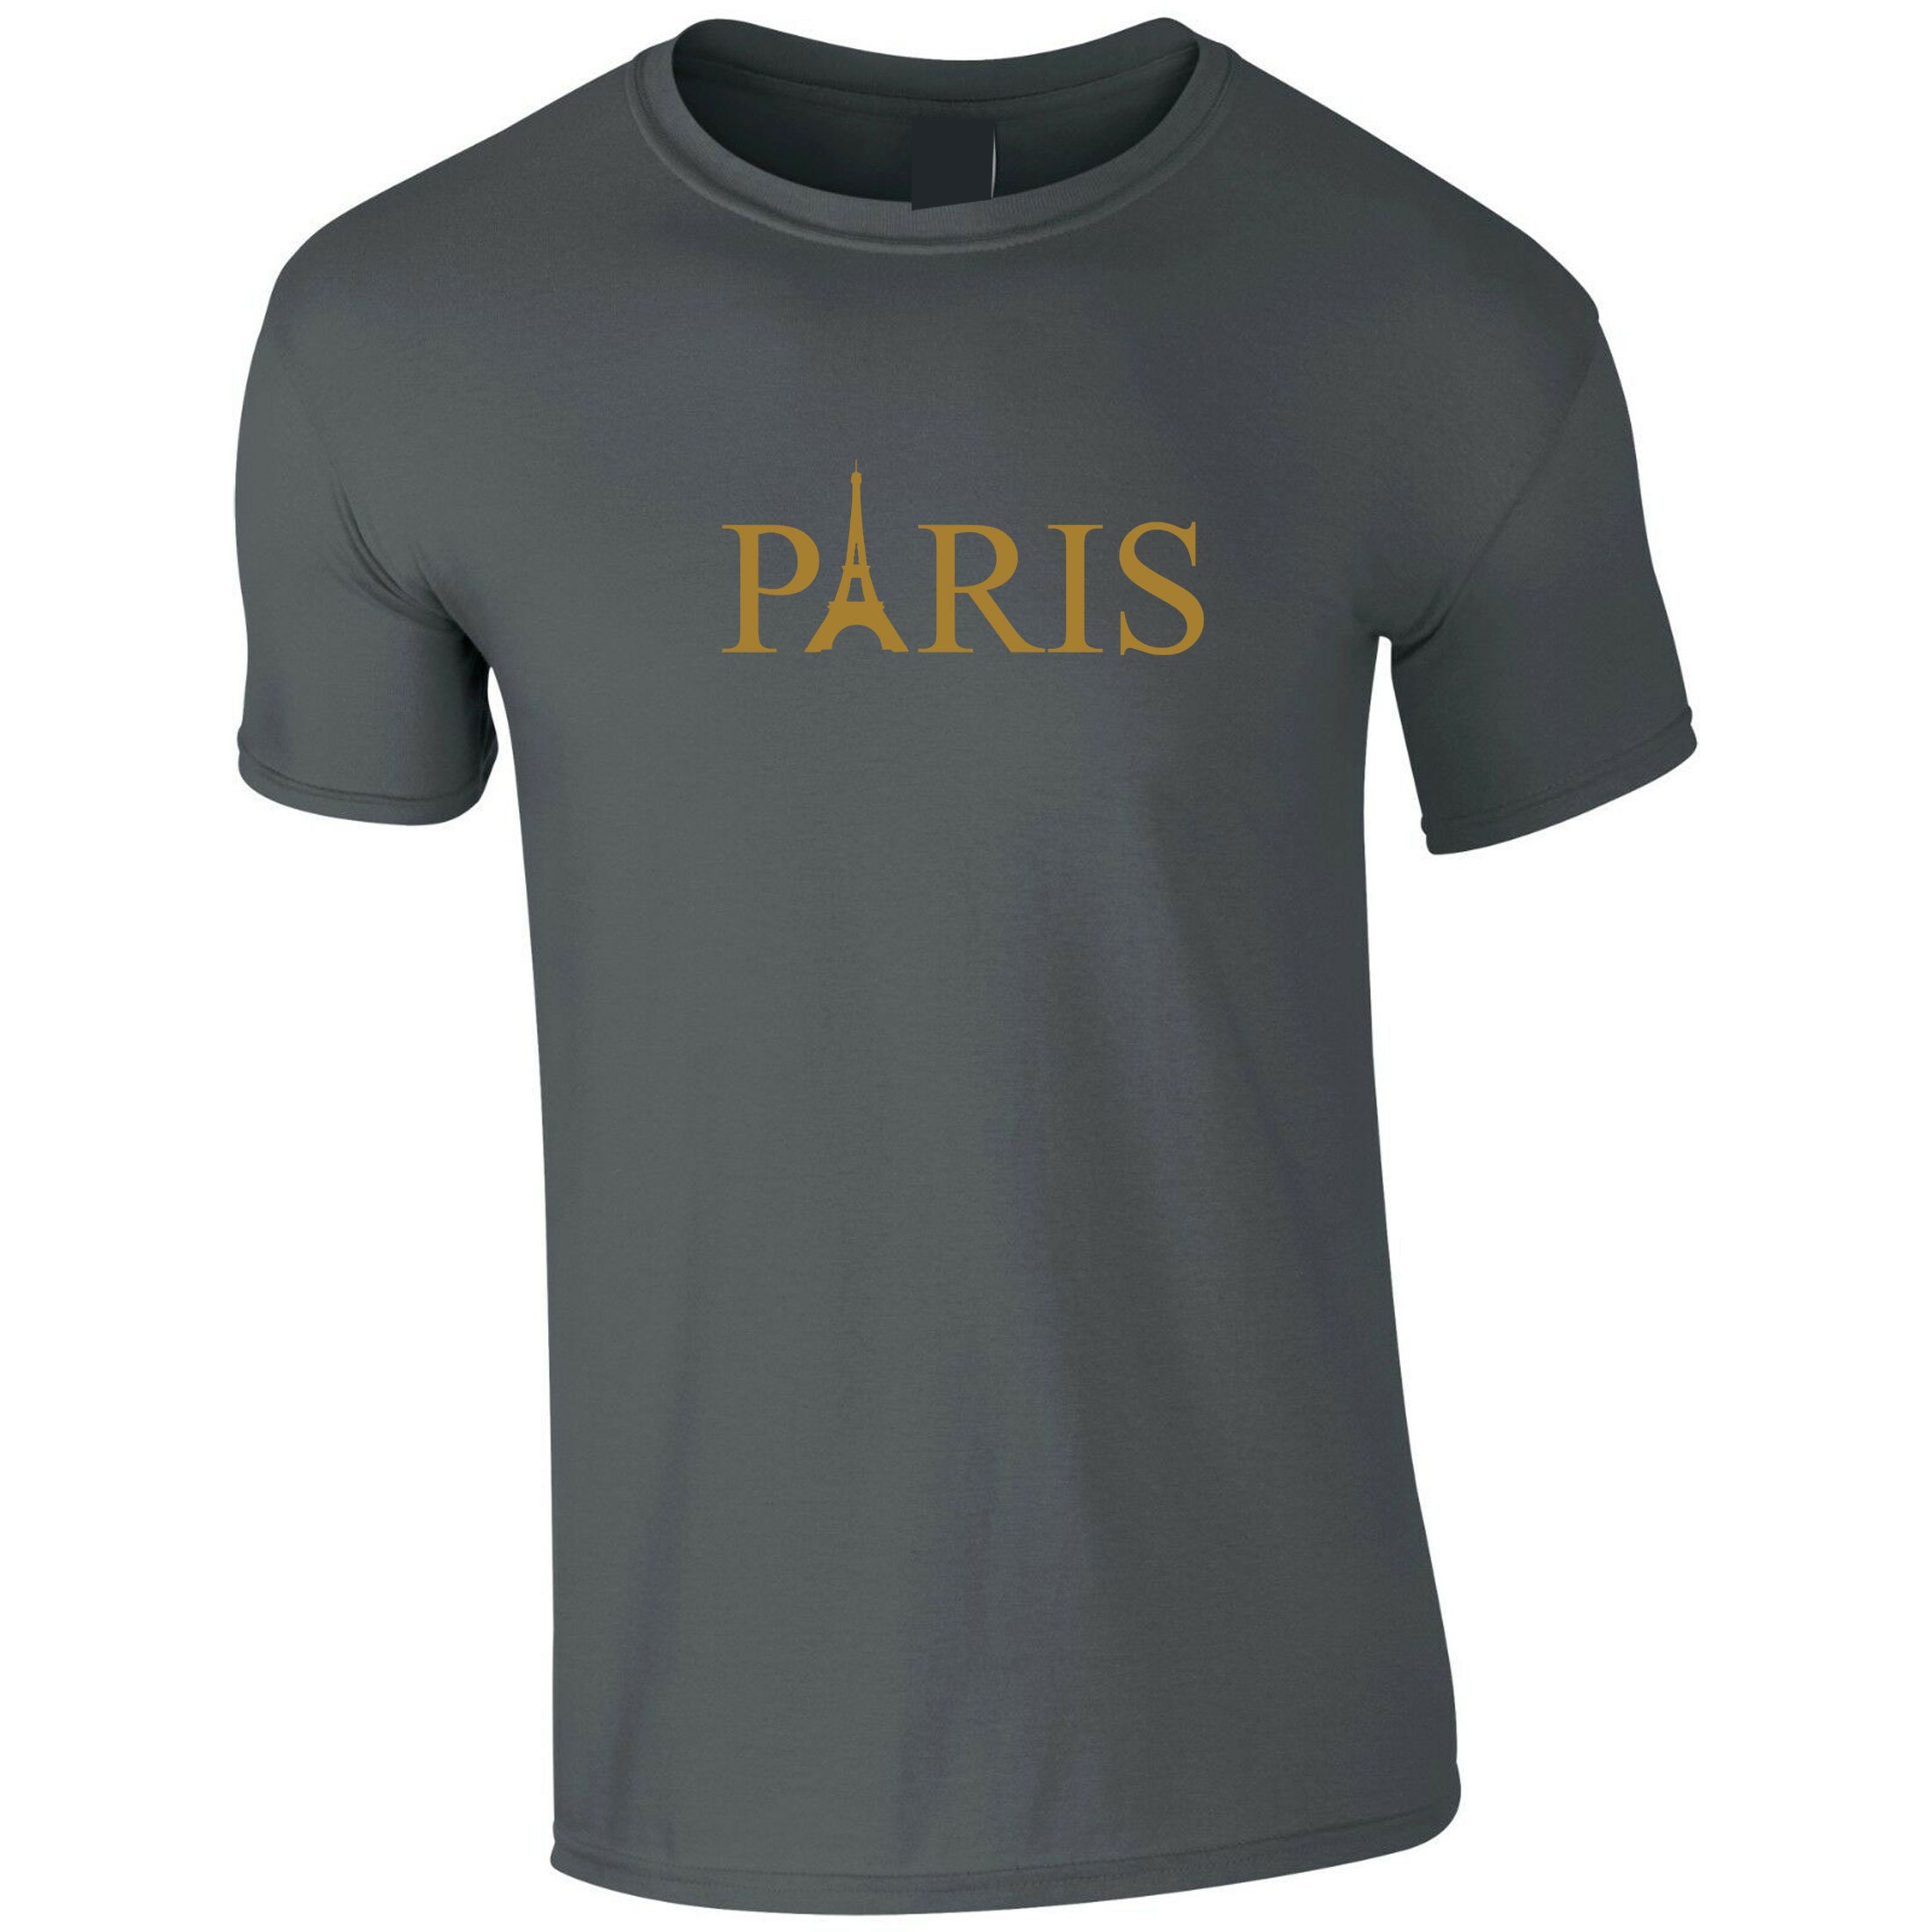 PARIS T shirt Tee Shirt T-shirt Tshirt I Love France Love | Etsy